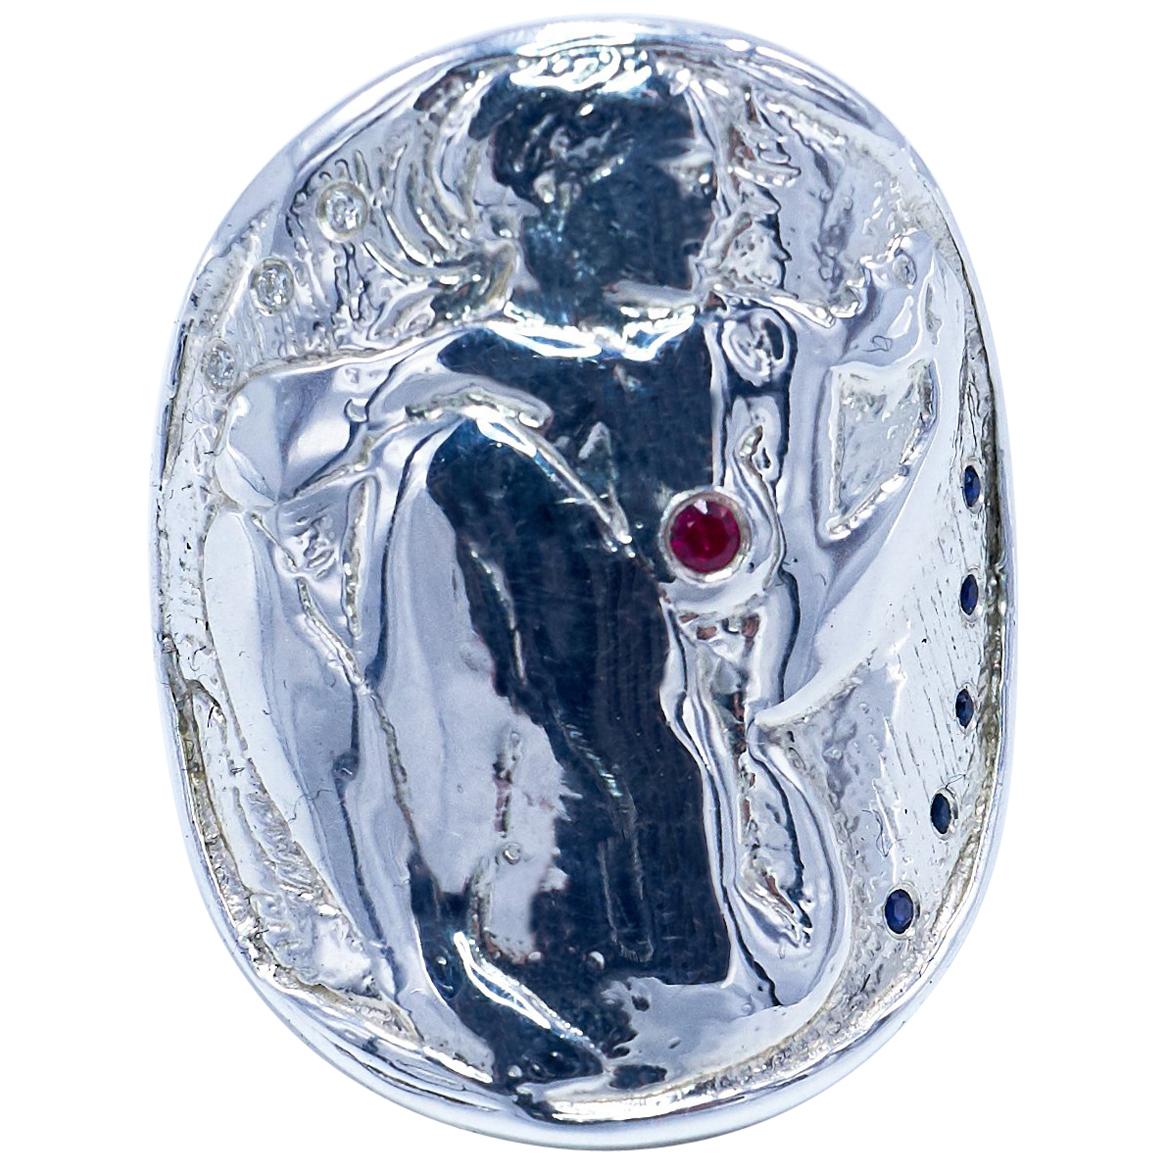 3 pcs Diamant blanc 1 Pc Rubis 5 pcs Saphir bleu Bague Médaille Bague avec une femme regardant un masque  Style Art nouveau

J DAUPHIN Bague 